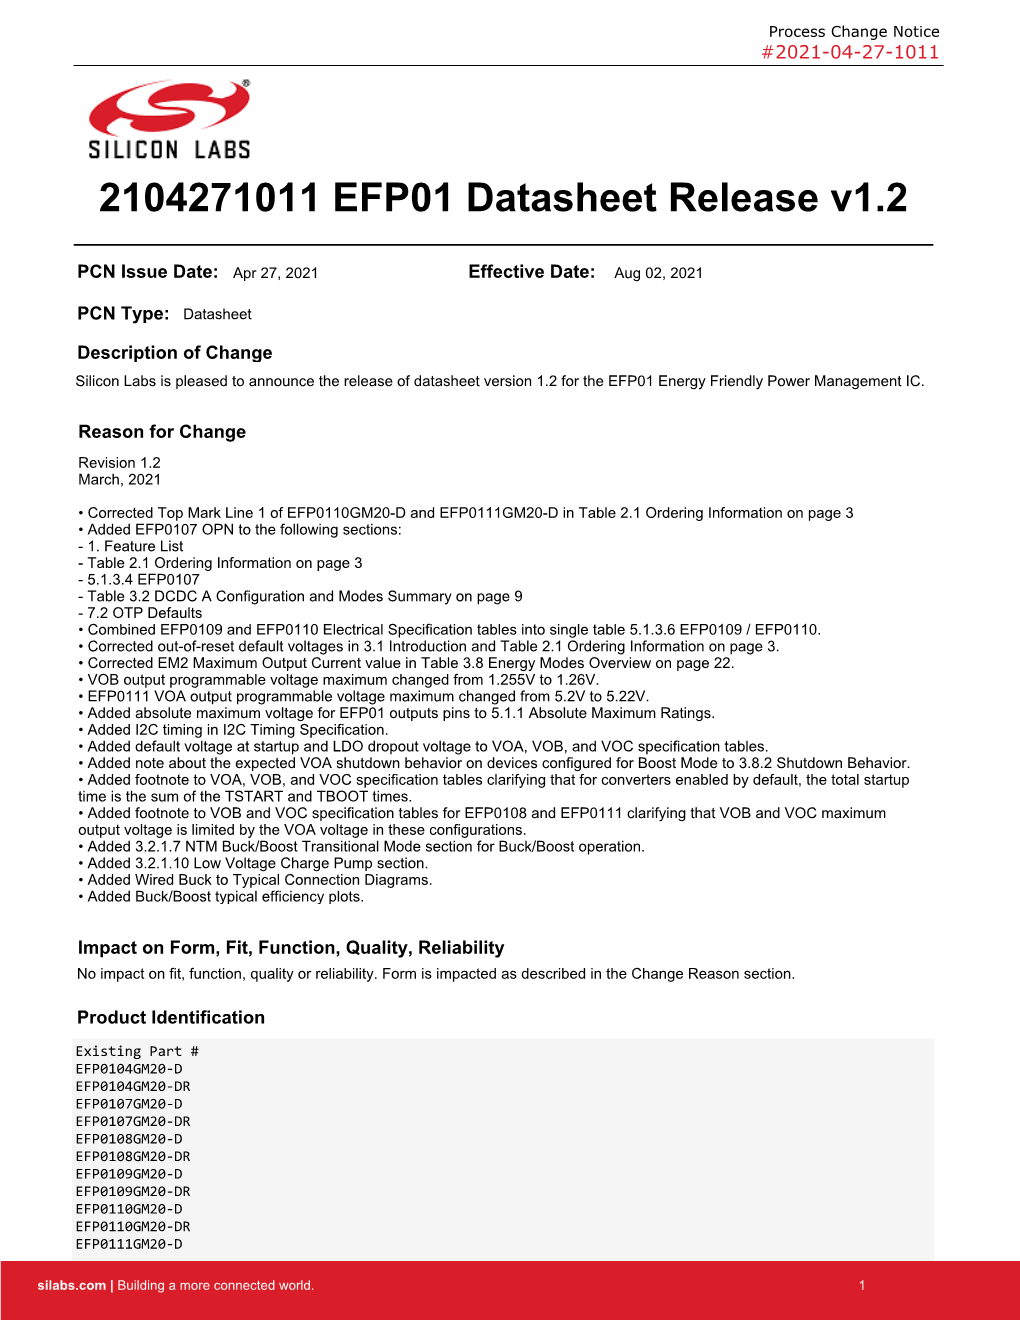 2104271011 EFP01 Datasheet Release V1.2